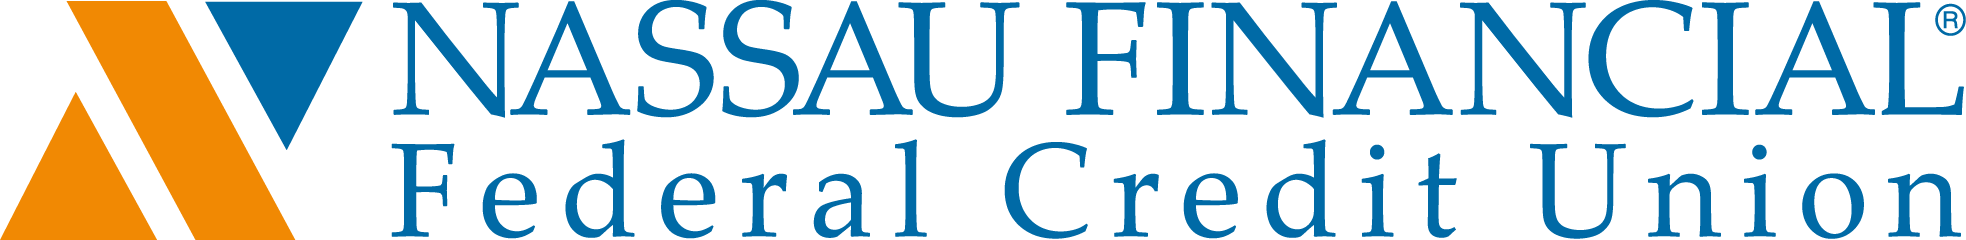 Nassau Financial Federal Credit Union logo